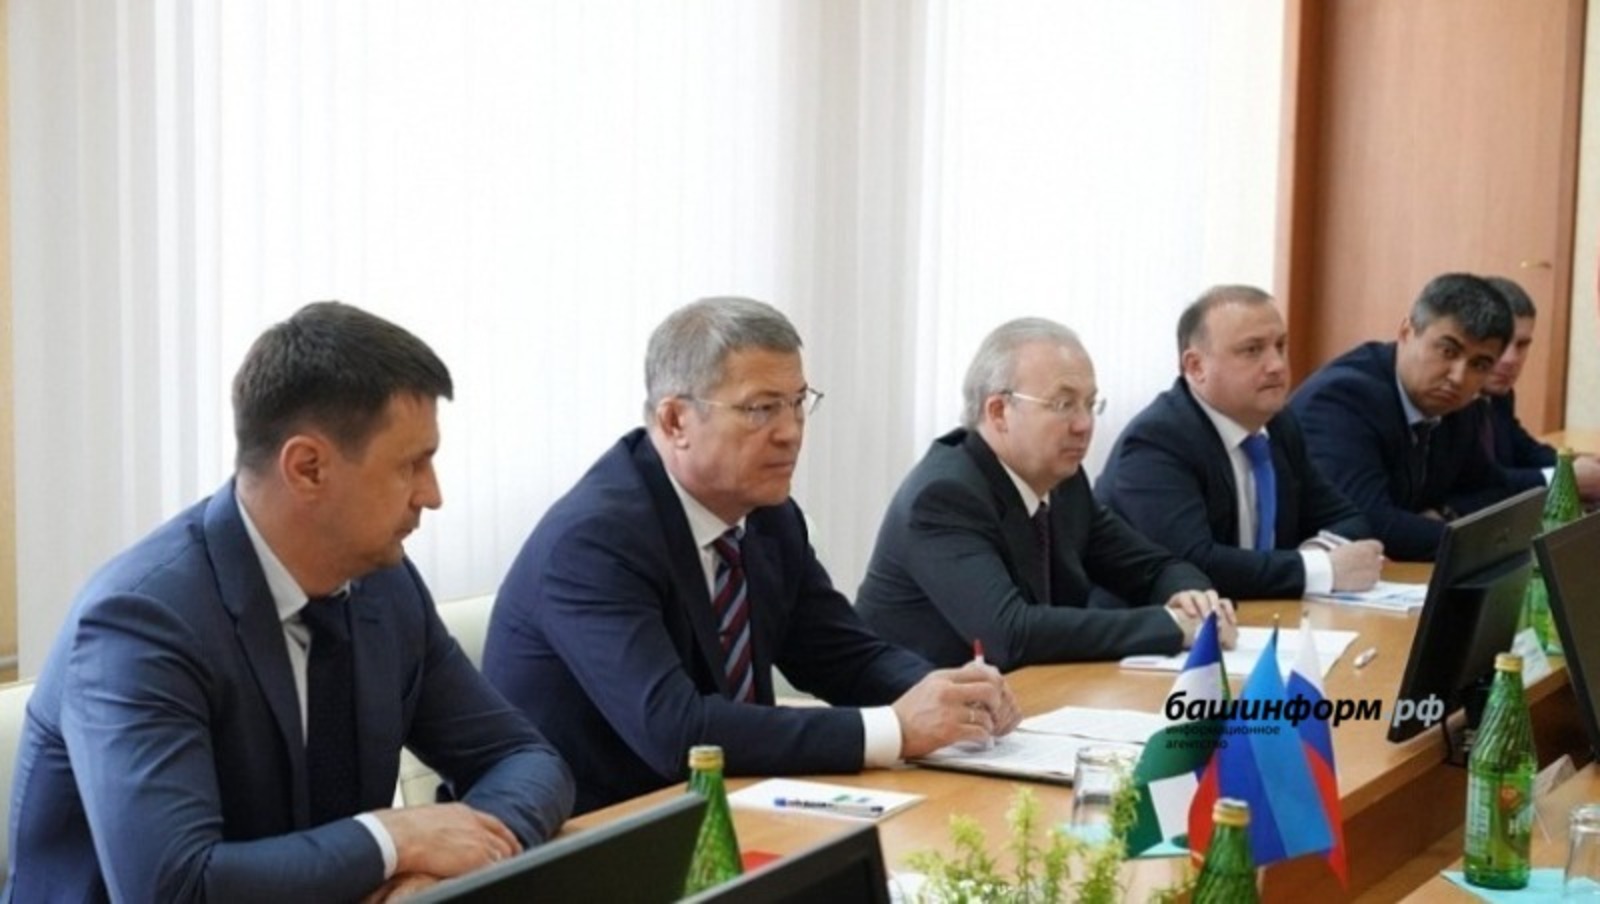 Что говорят эксперты про визит Хабирова в Луганск